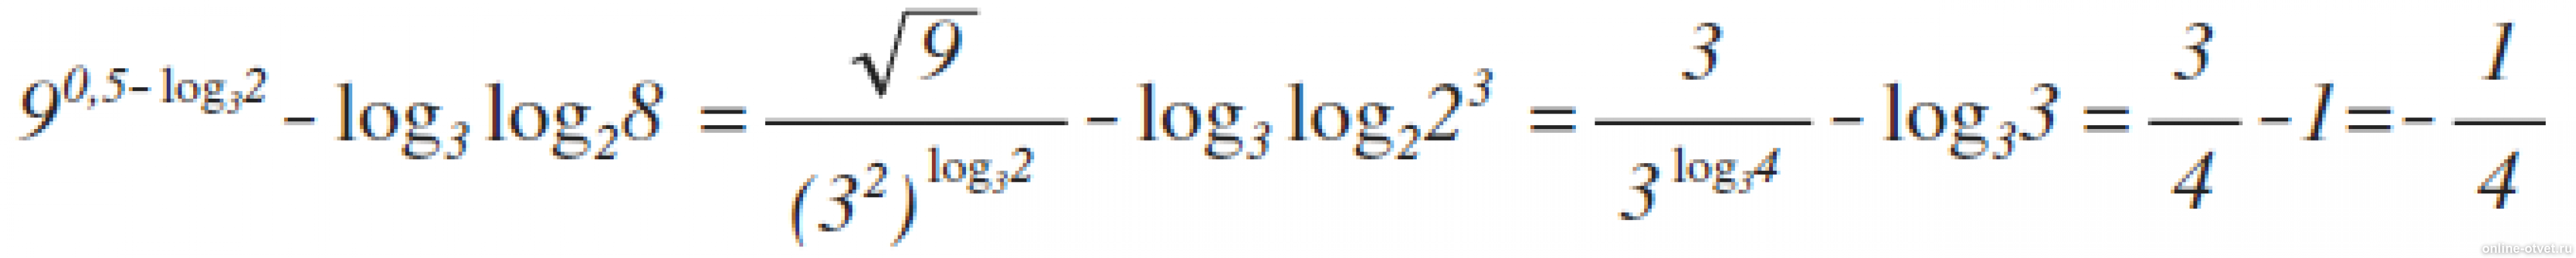 Log x 3 9x 2. 9 В степени 0.5 log 3 2 log3. Лог x по основанию корень из 3. Log 25 по основанию корень из 2. Log2 log2 корень 4 степени из 2.